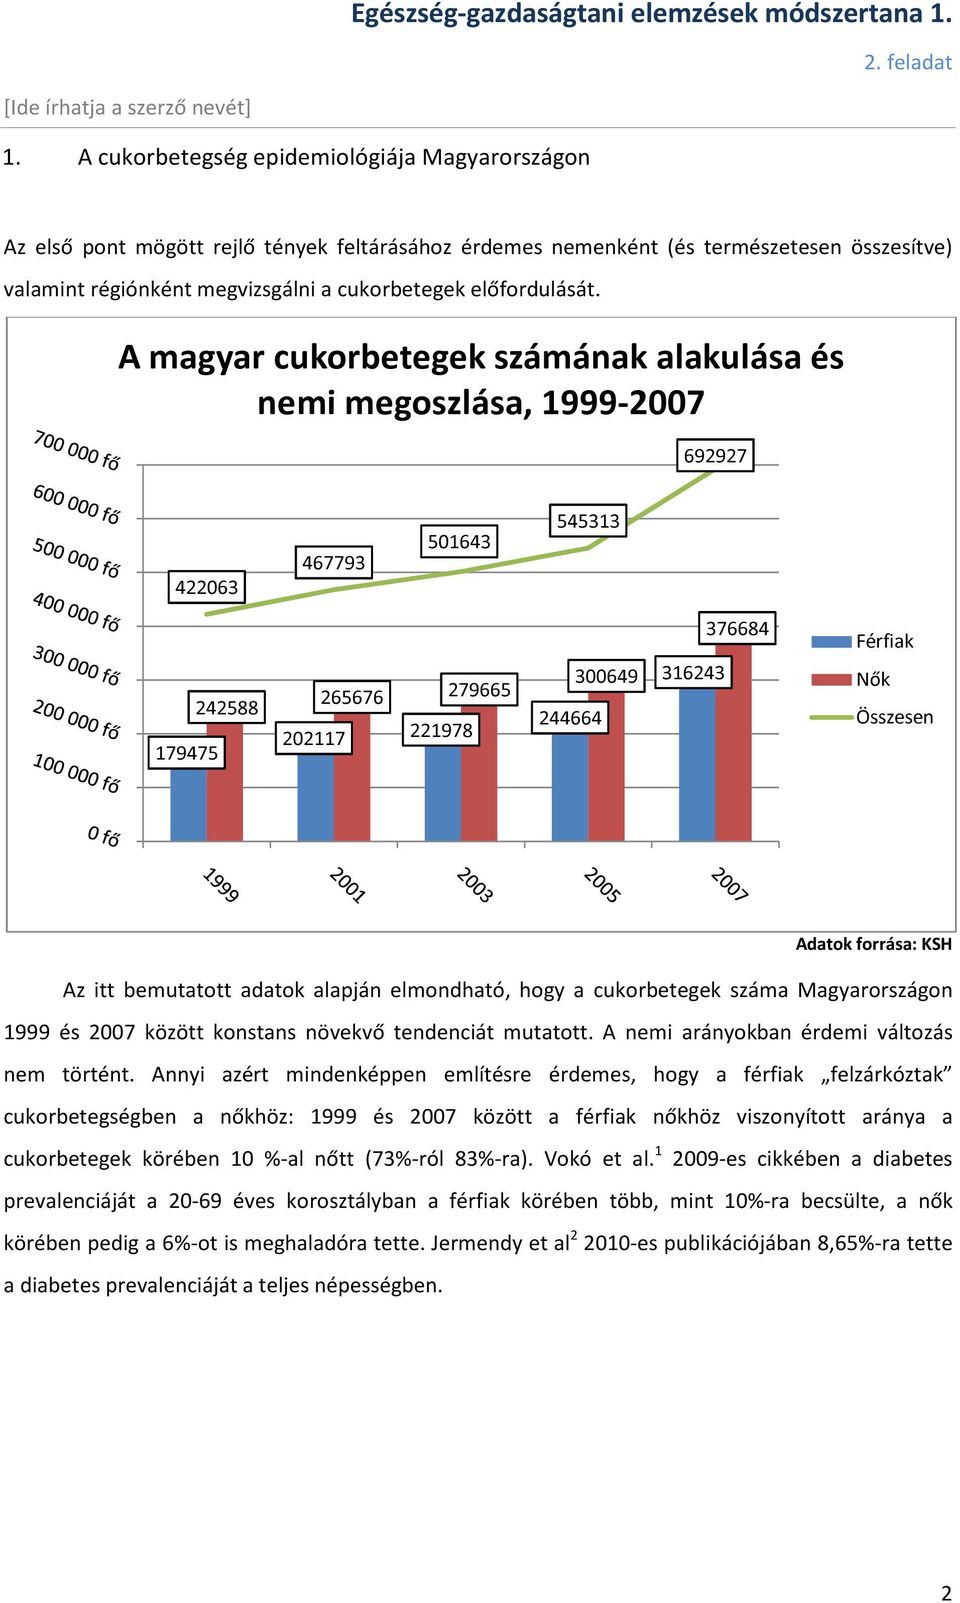 cukorbetegség aránya magyarországon